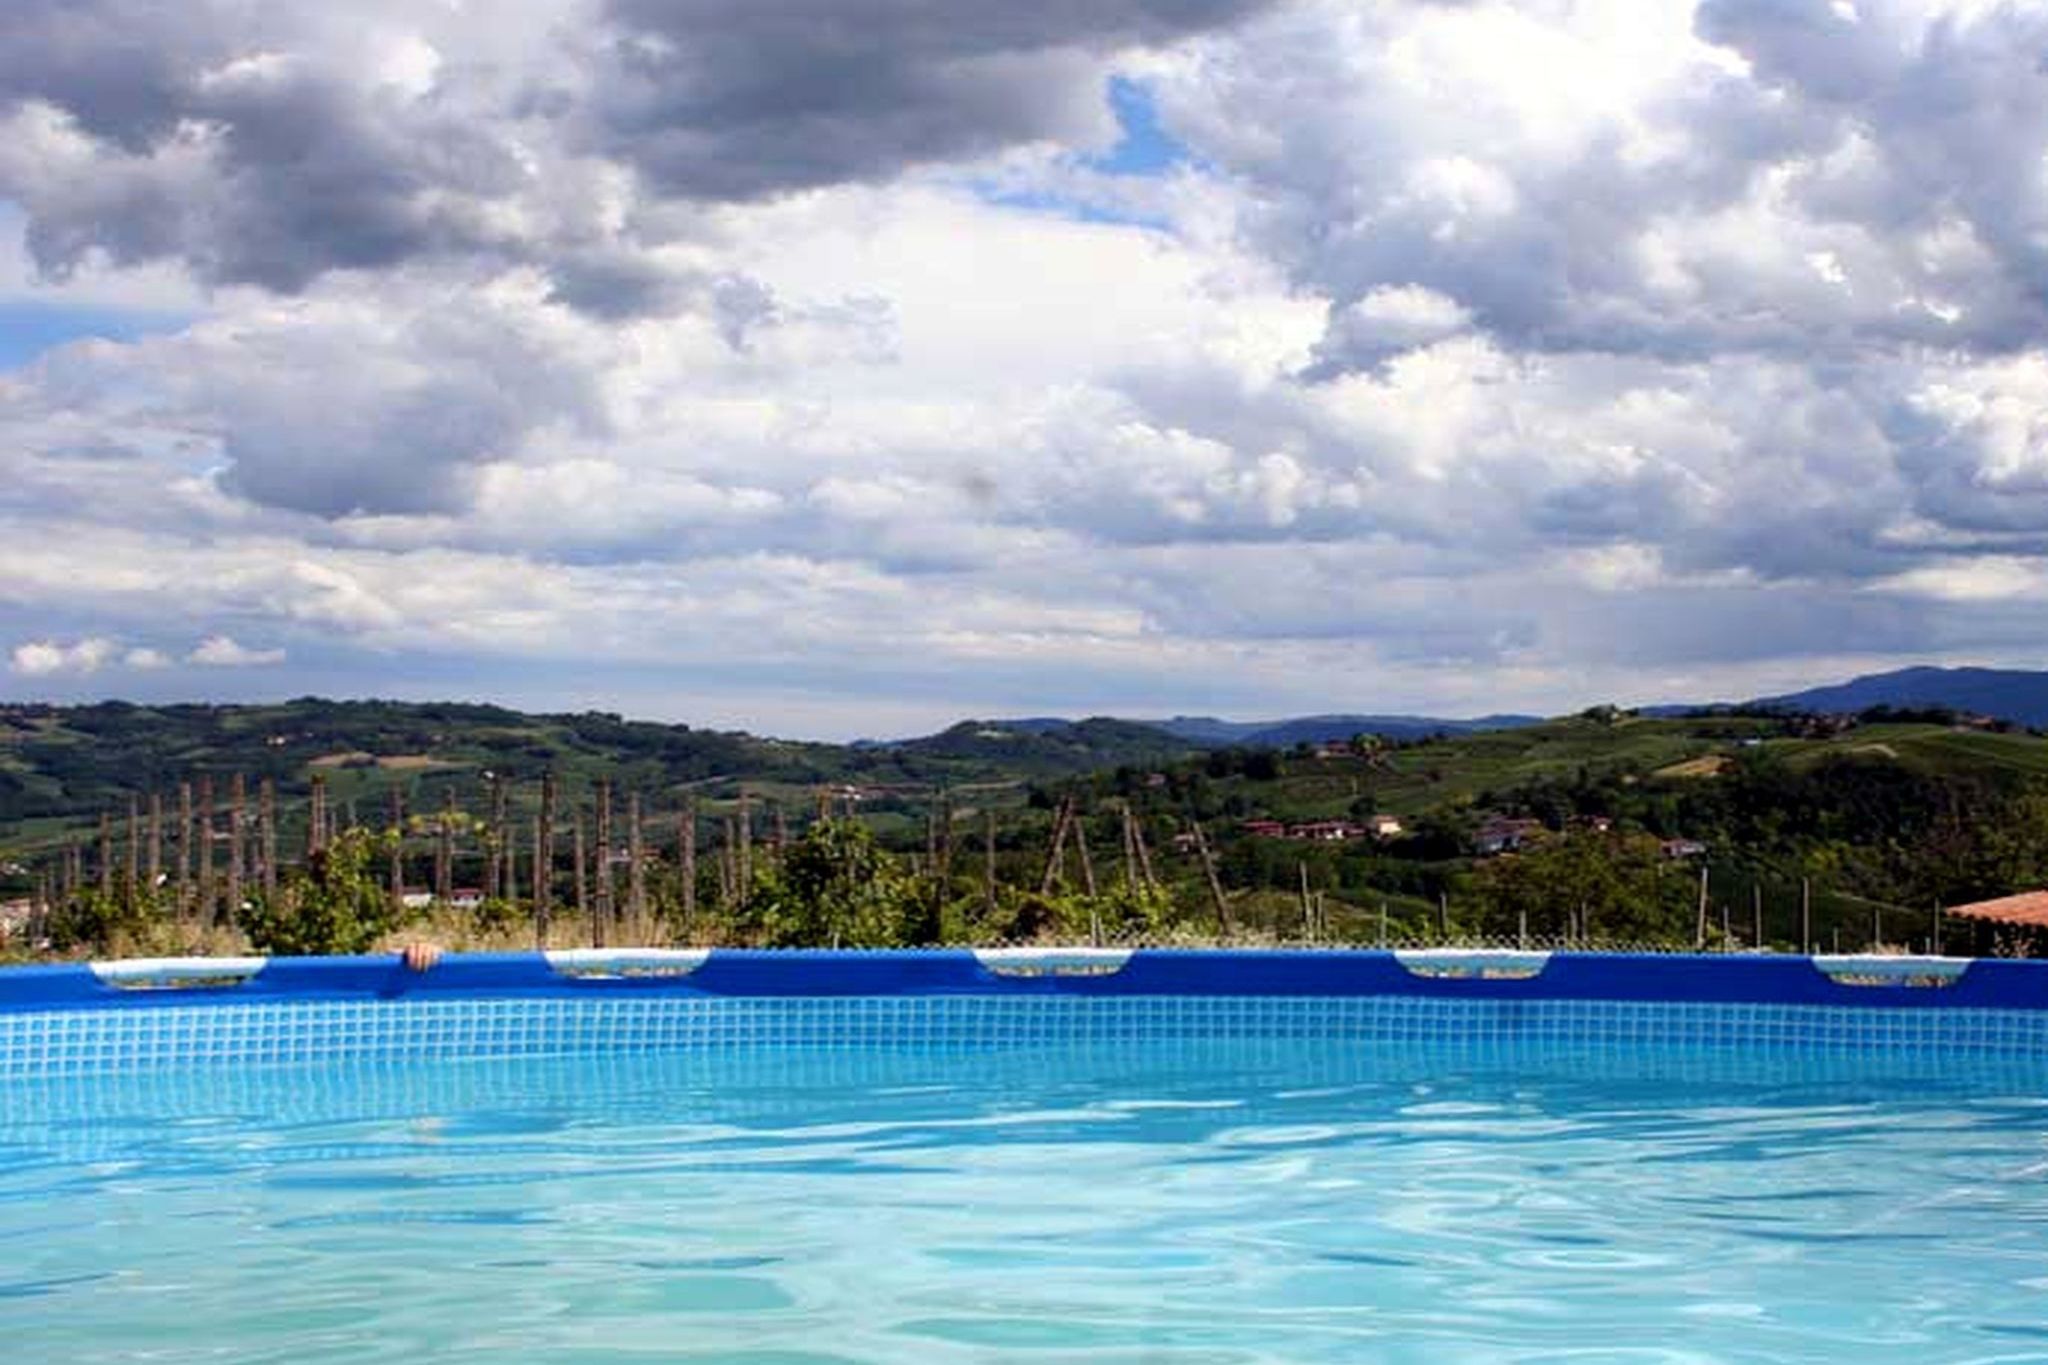 Landelijke boerderij in Lombardije met een zwembad.